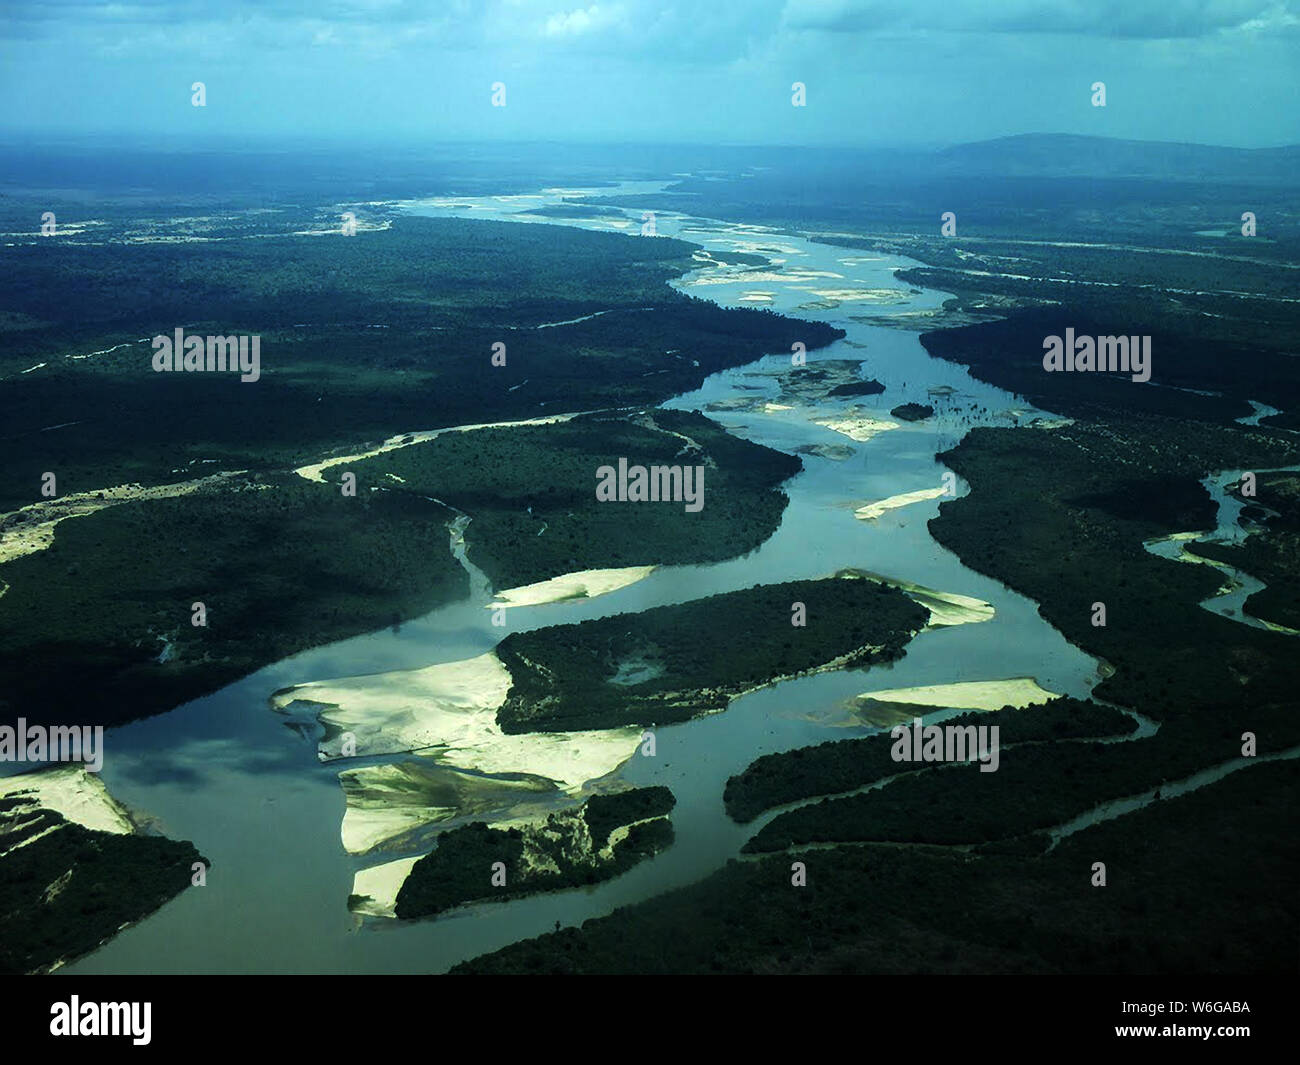 El Rufiji es Oriente Africas perennes más grande río y cuanto más se aproxima a la costa exhibe las características típicas del curso inferior del río. Foto de stock